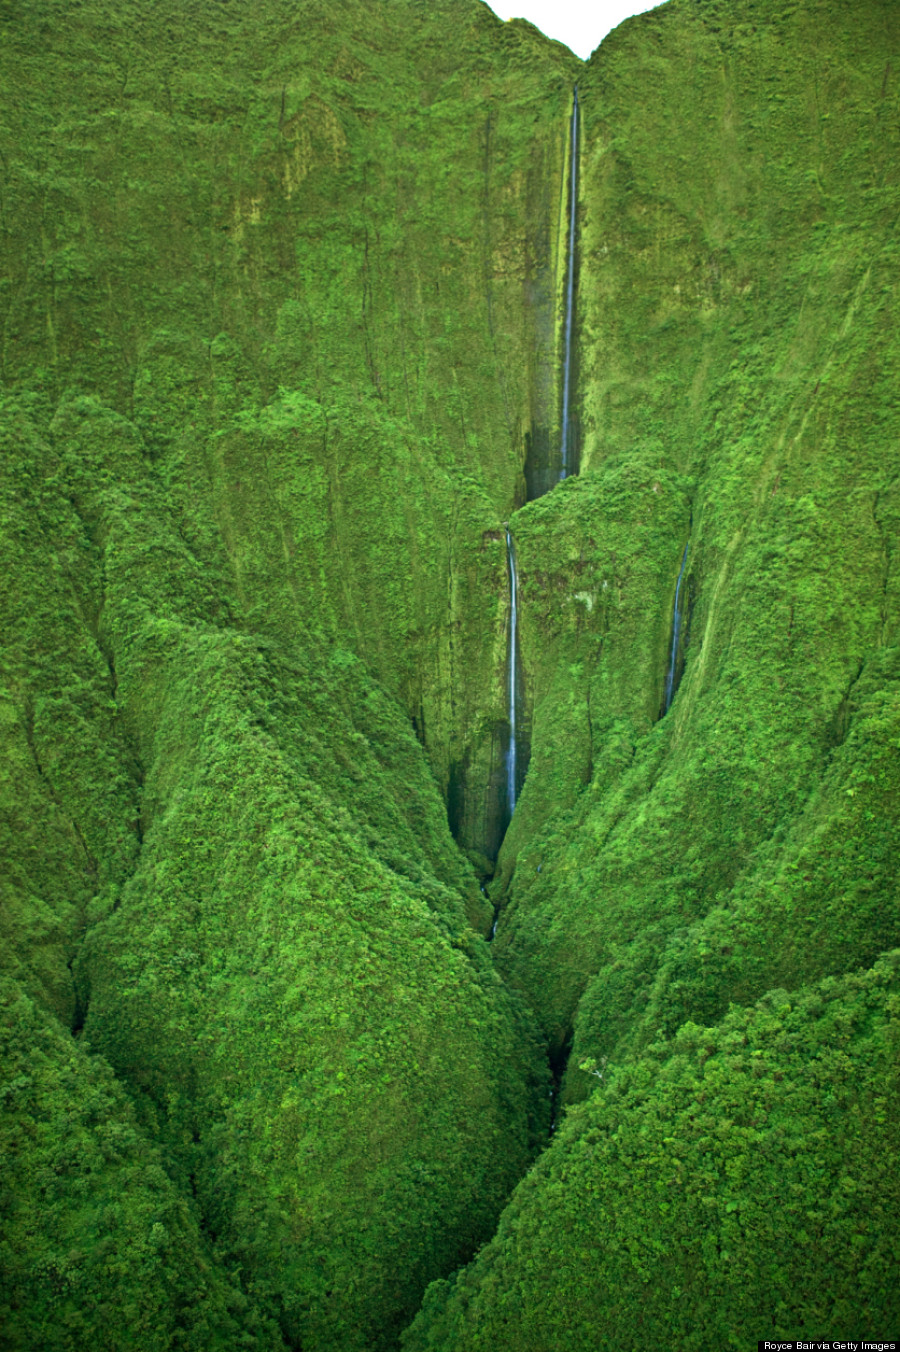 honokohau falls